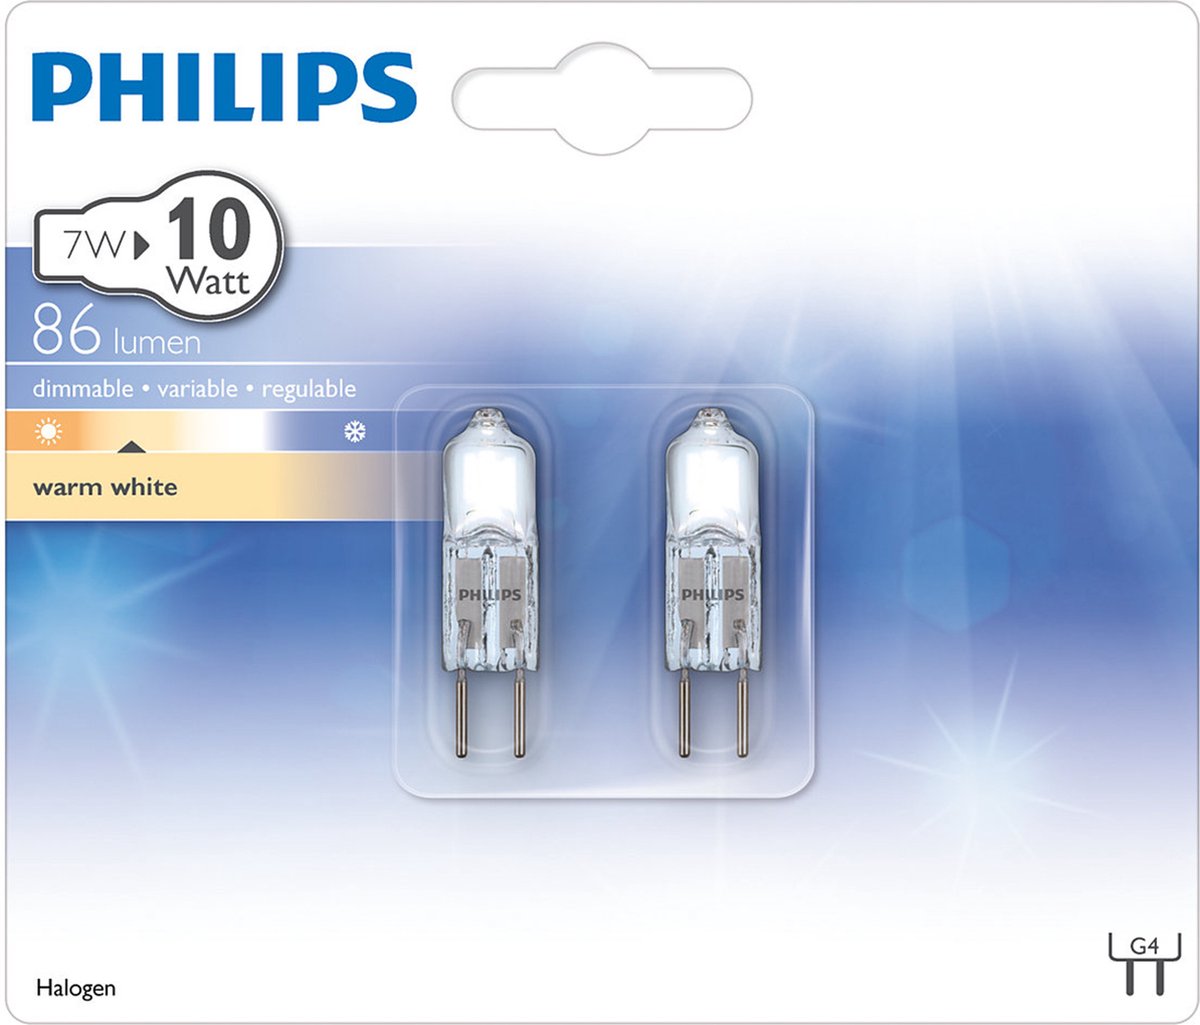 Led philips 12v. Philips 12v 7w. Лампа Филипс 10w. Лампа галогенная Philips 12 Volt 35 Watt Brilliant. Лампа Филипс 10 Вт 950 люмен.